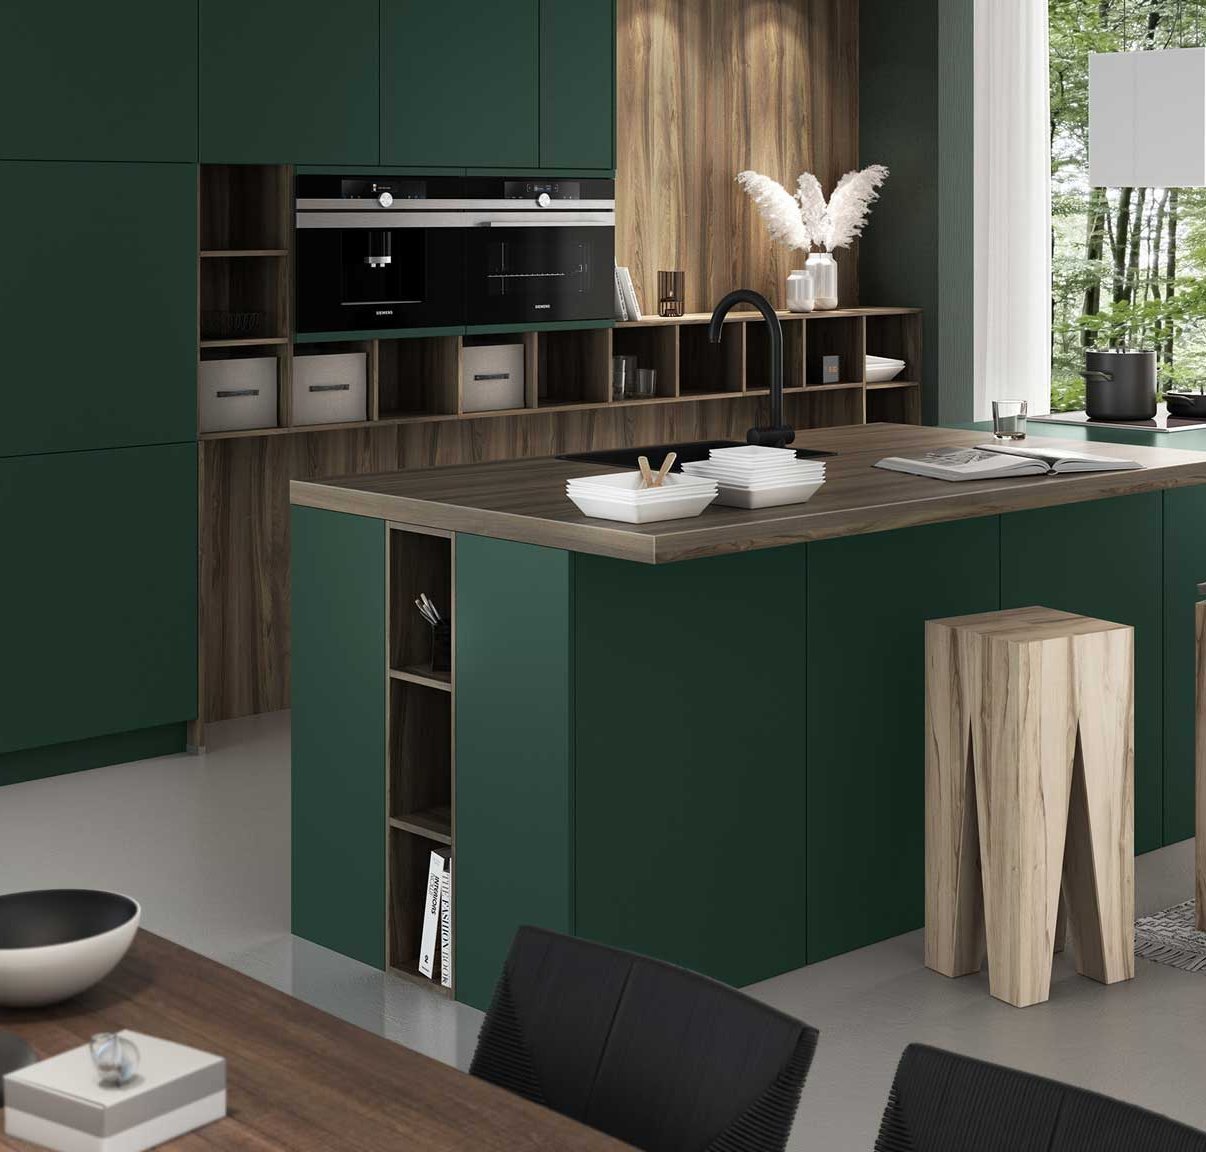 artego Küchen in Tannengrün grüne Küche